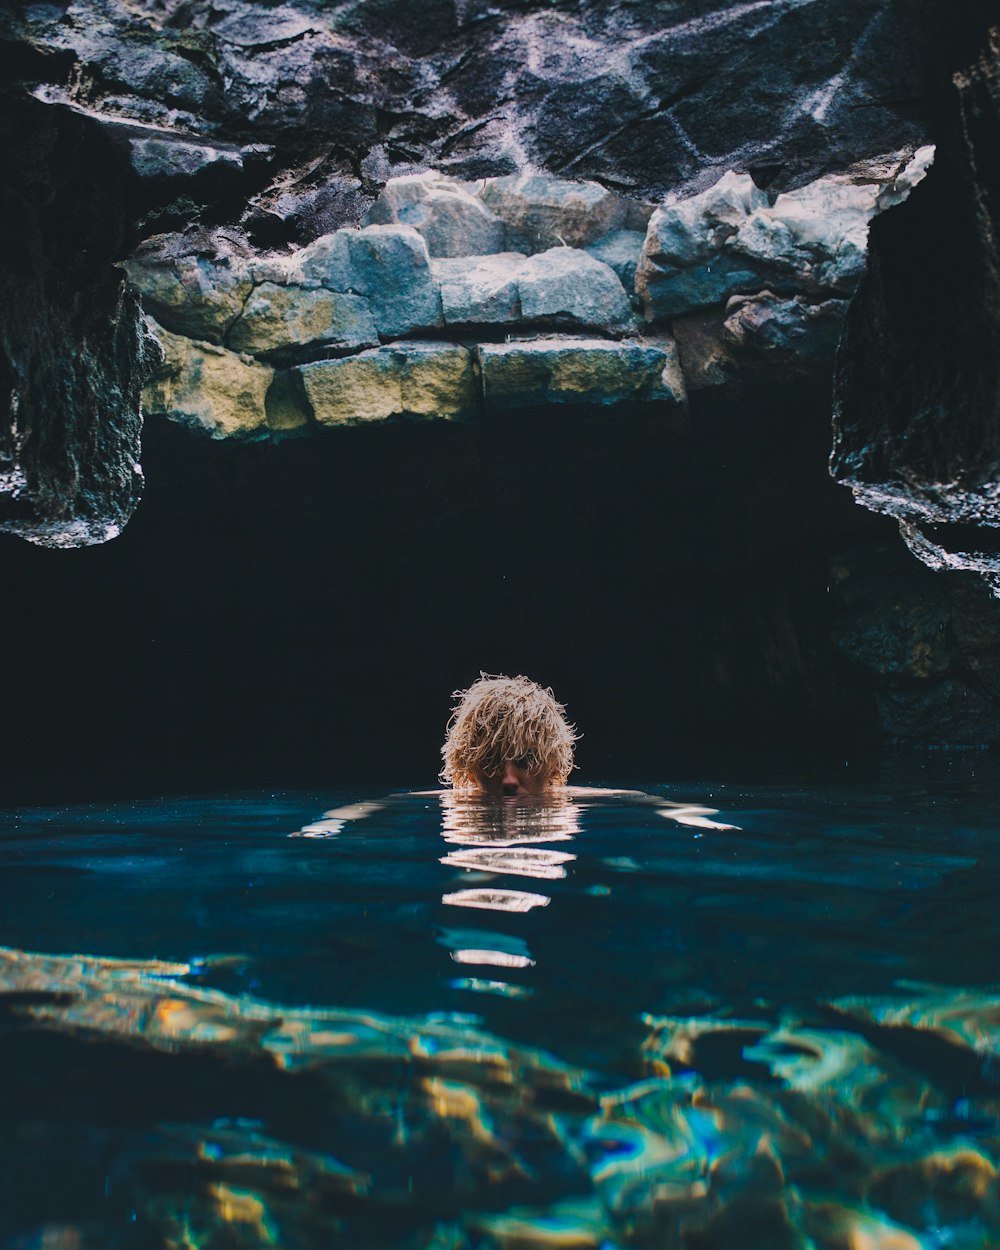 persona sommersa in acqua sulla grotta